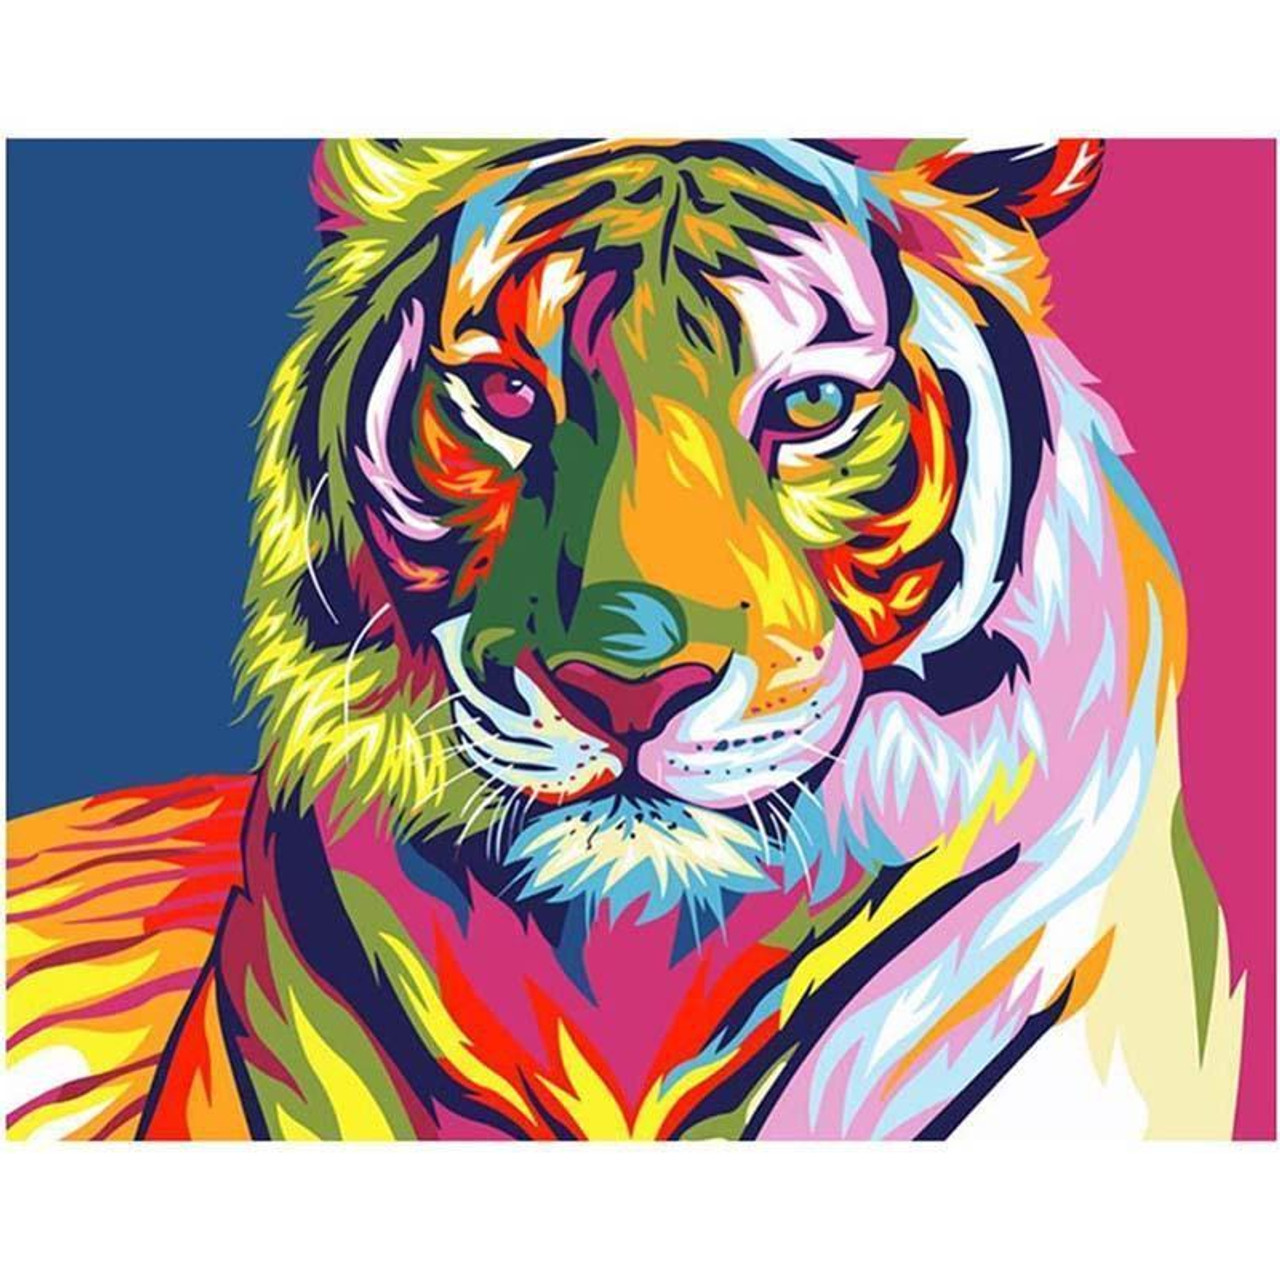 5D Diamond Painting Abstract Rainbow Leopard Face Kit - Bonanza